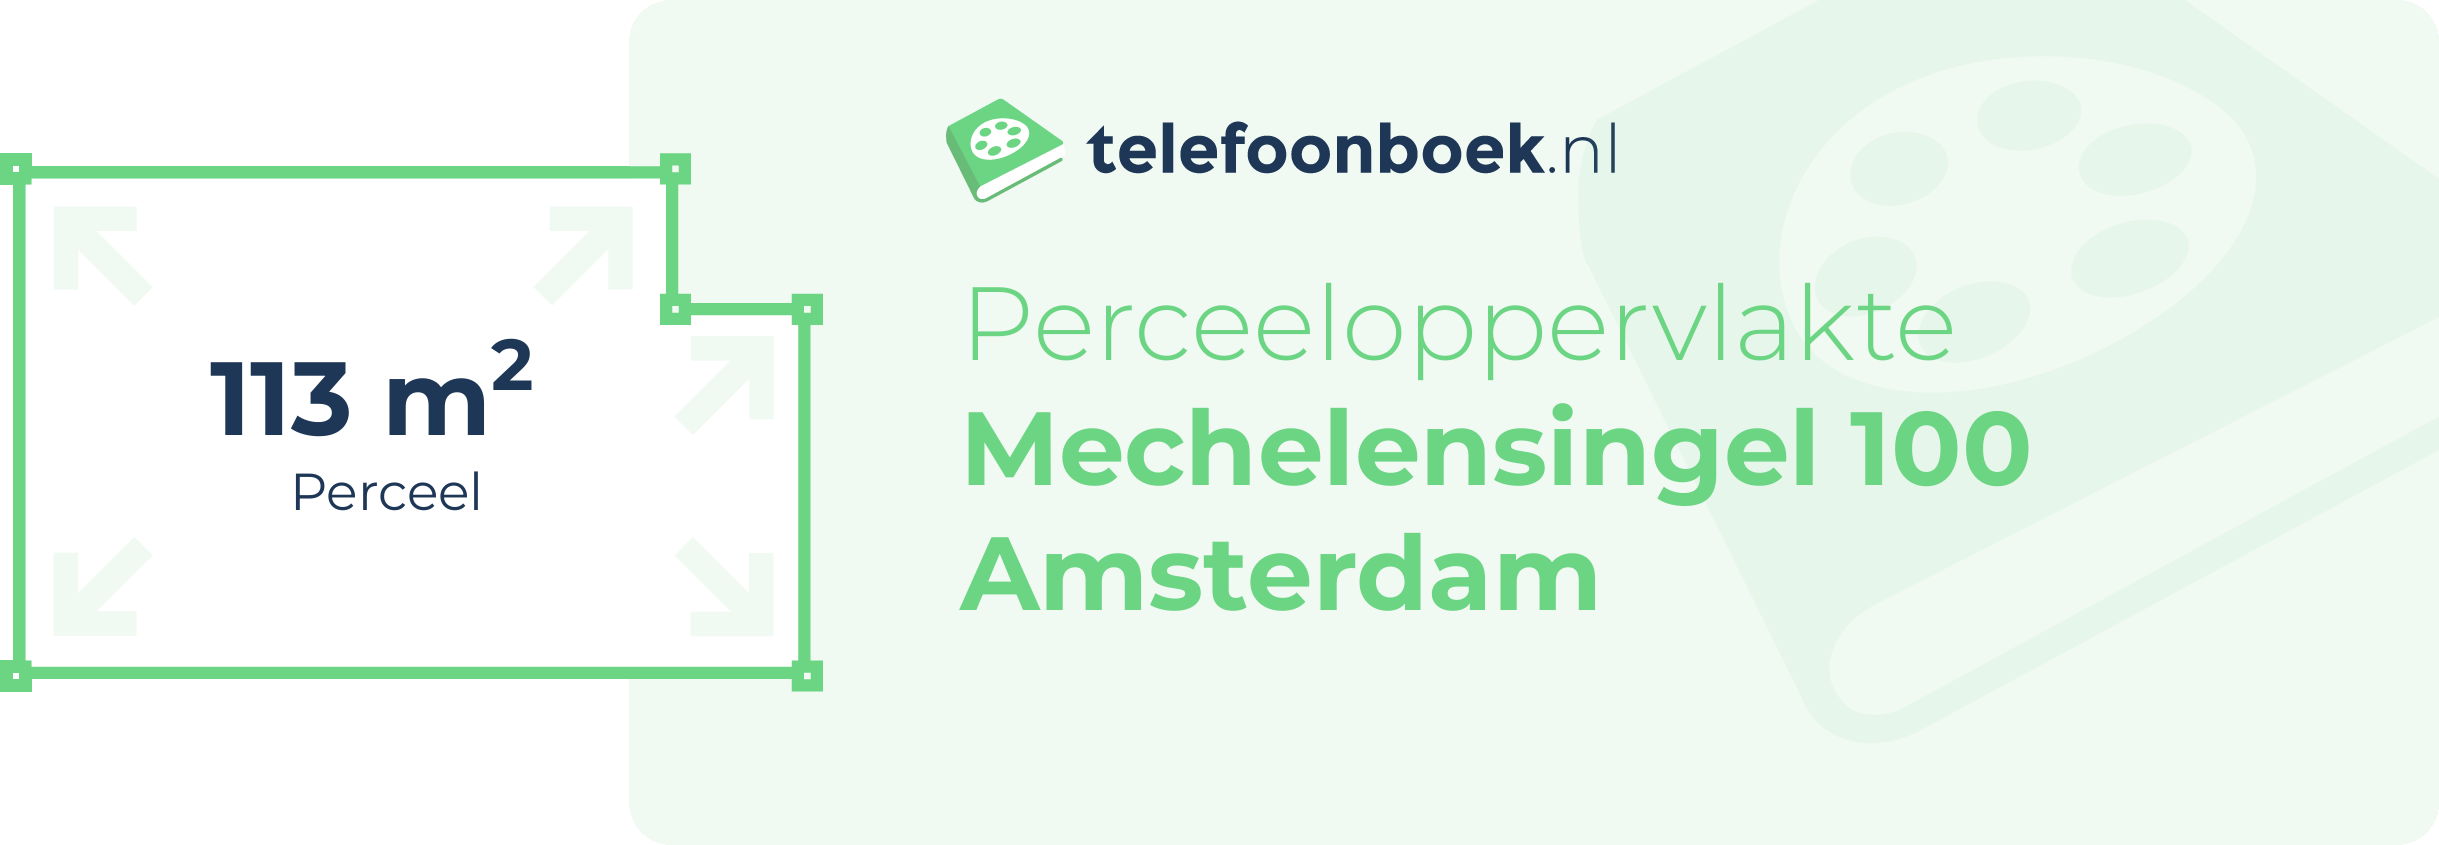 Perceeloppervlakte Mechelensingel 100 Amsterdam